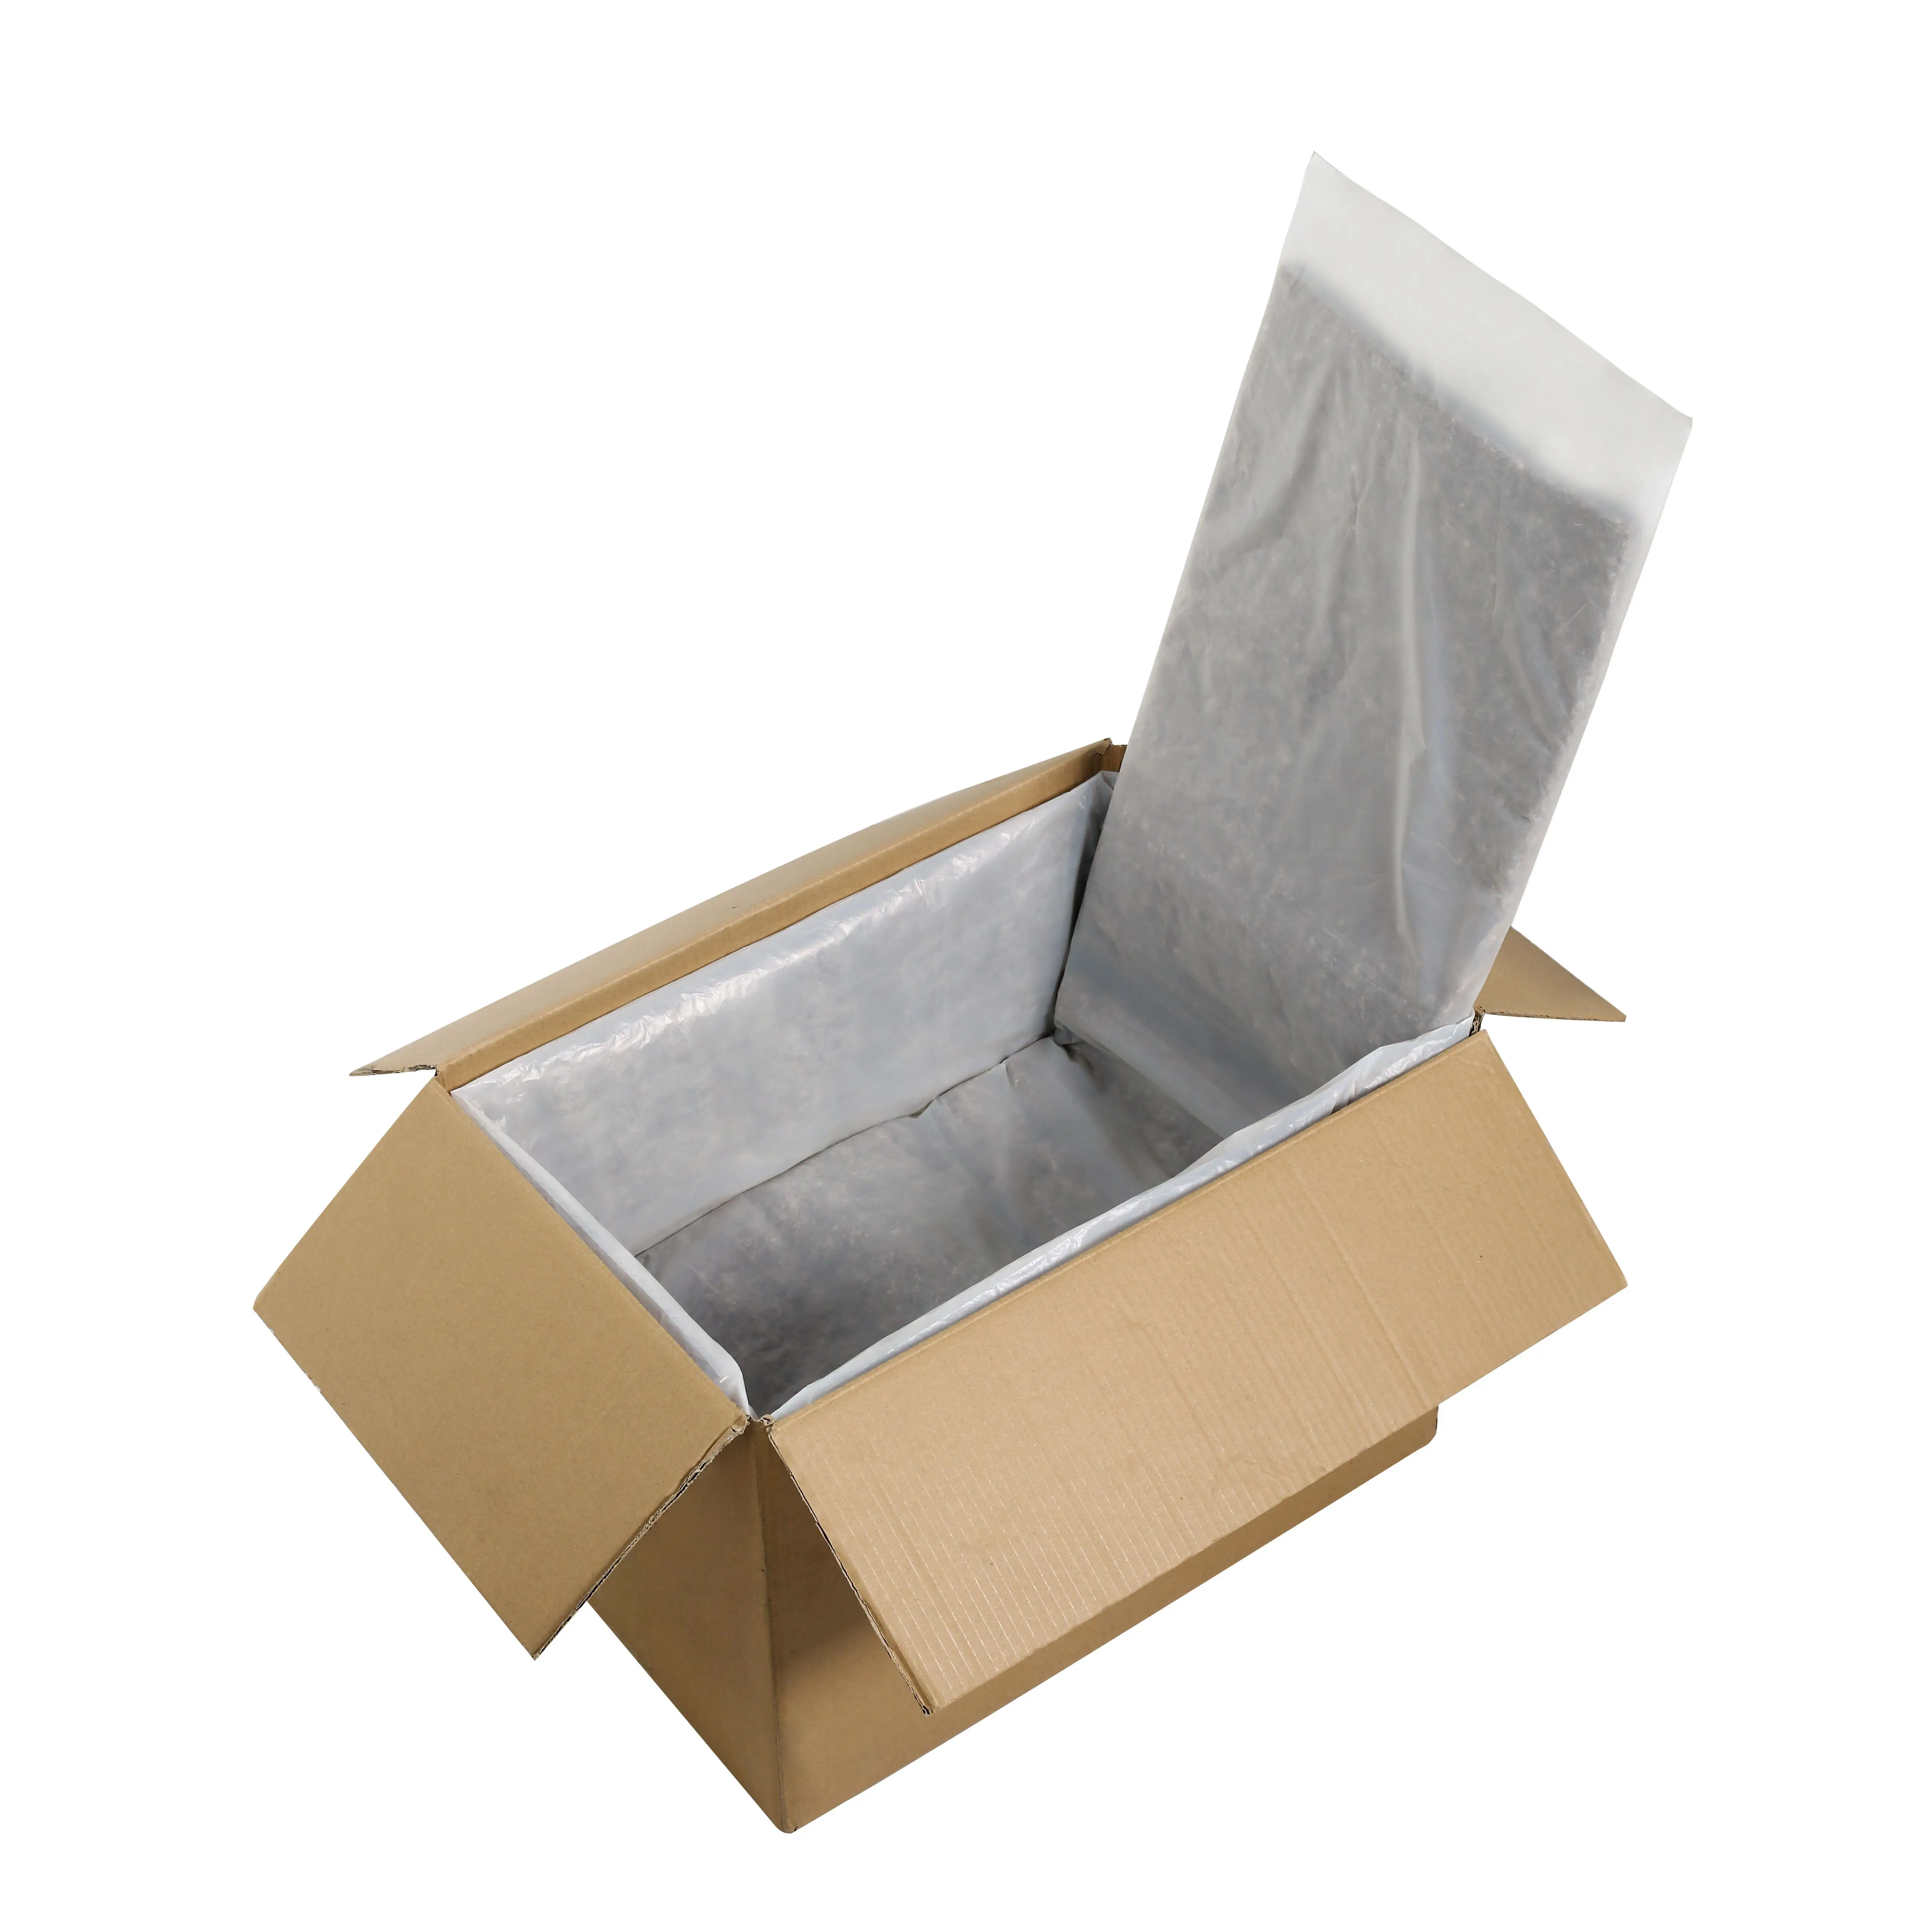 ऊन थर्मल लाइनर बॉक्स के लिए थर्मल इन्सुलेशन के लिए जमे हुए भोजन परिवहन